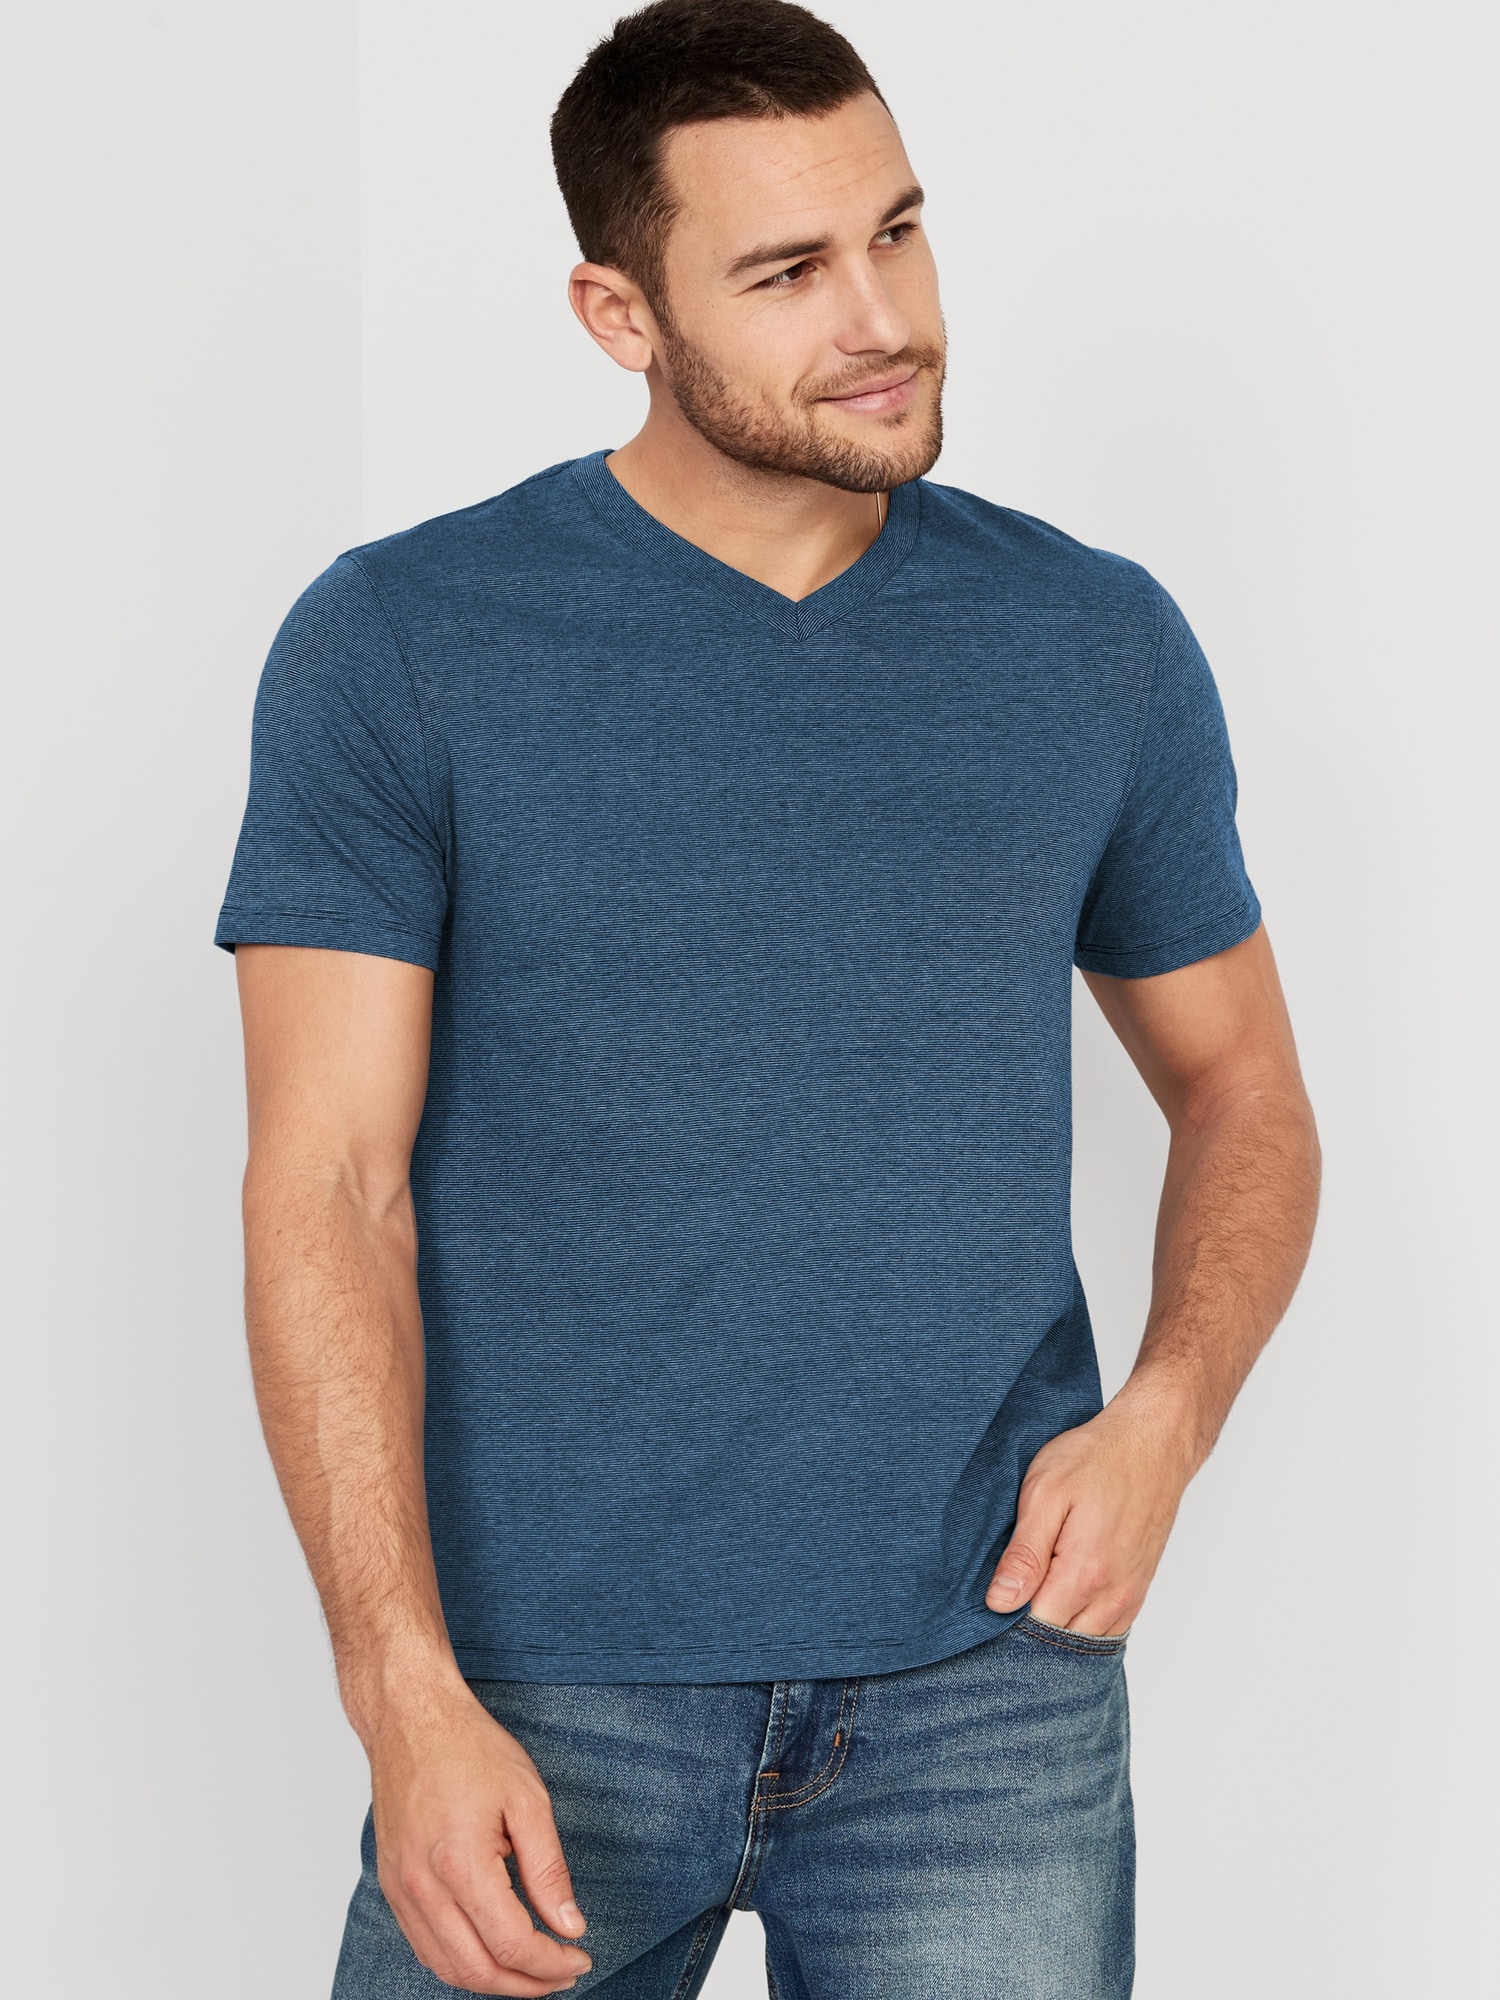 Old Navy Soft-Washed Micro-Stripe V-Neck T-Shirt for Men blue. 1